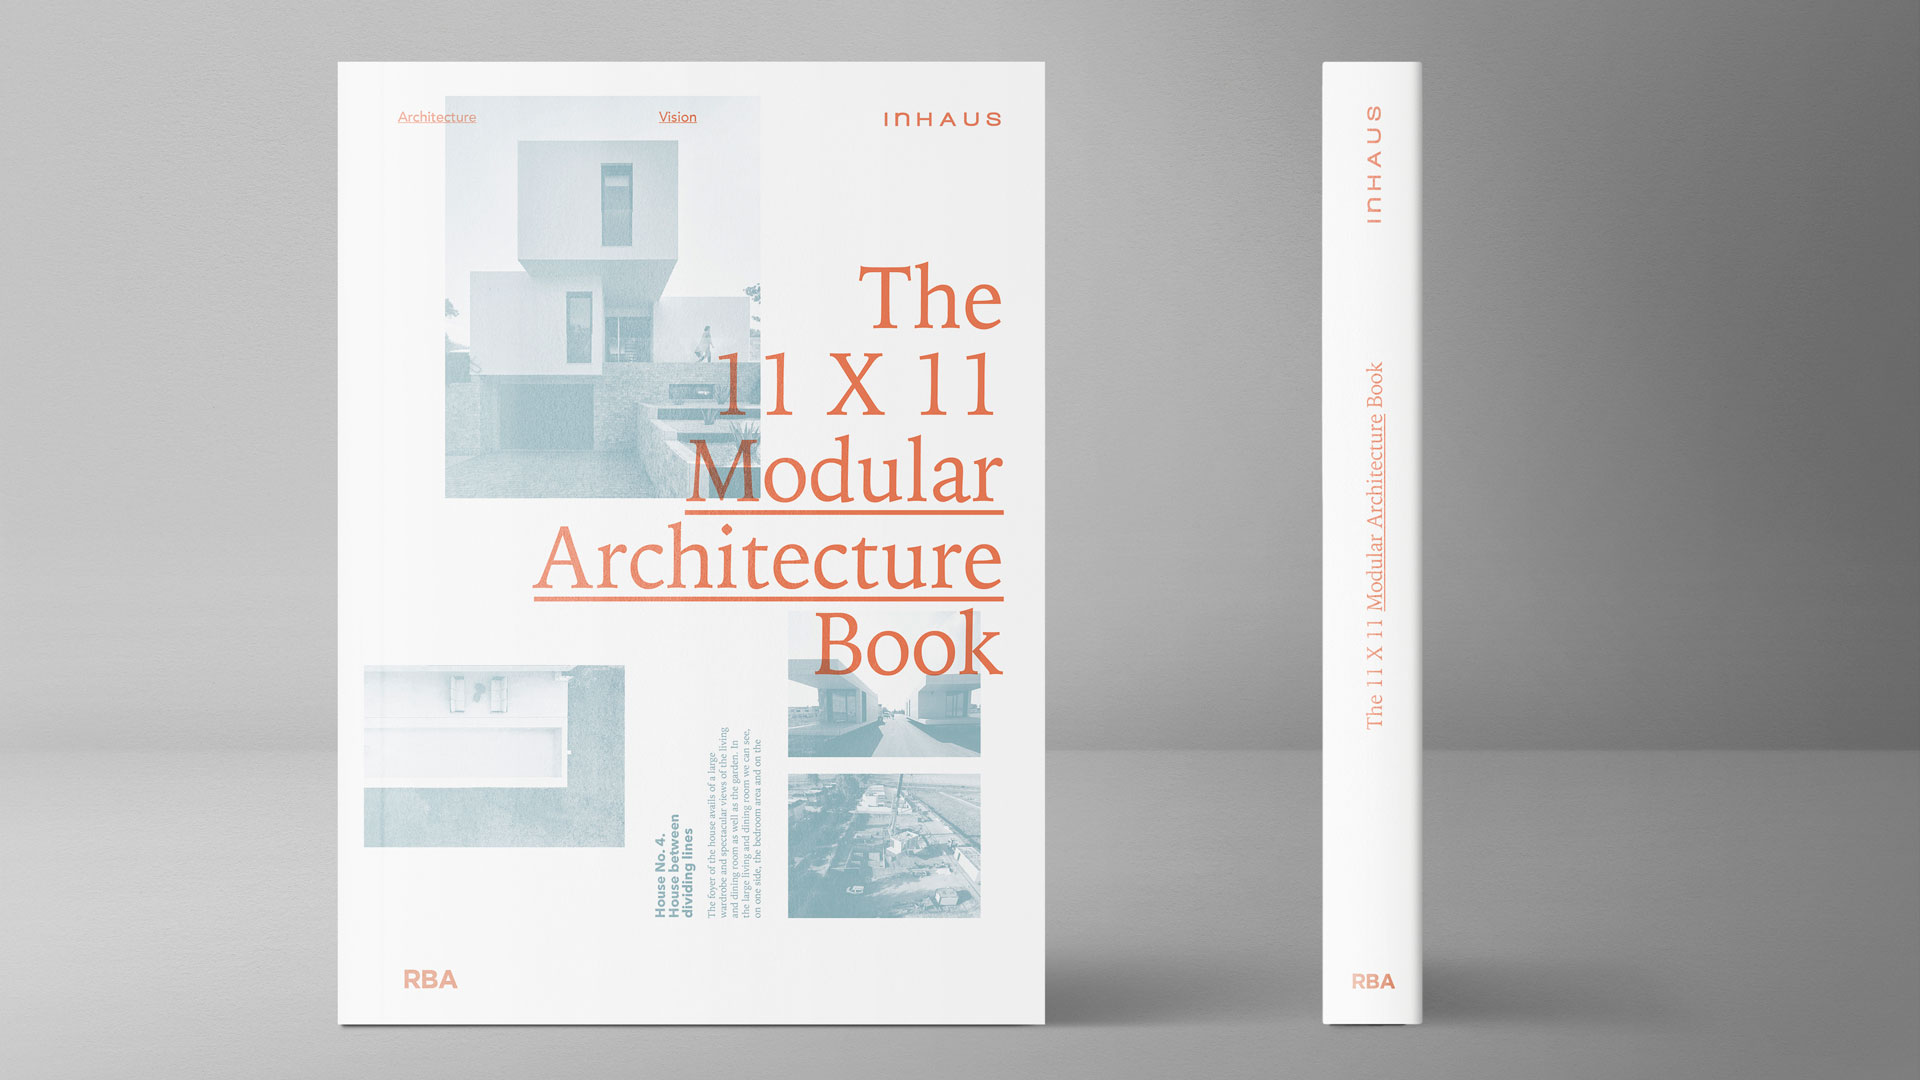 inHAUS y RBA lanzan el libro 'The 11x11 Modular Architecture Book'